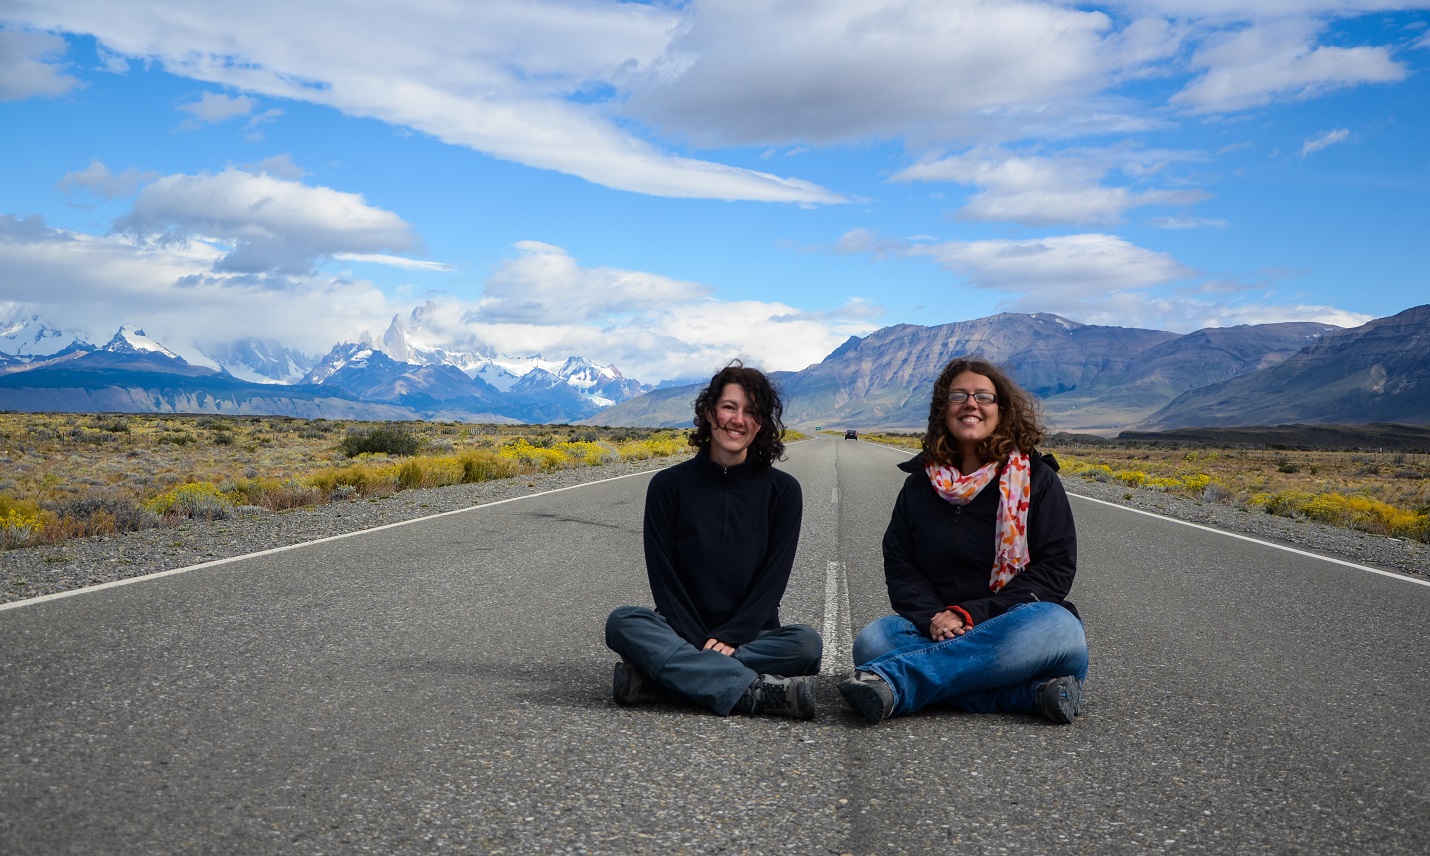 lucie en autostop pendant son permis vacances travail en argentine